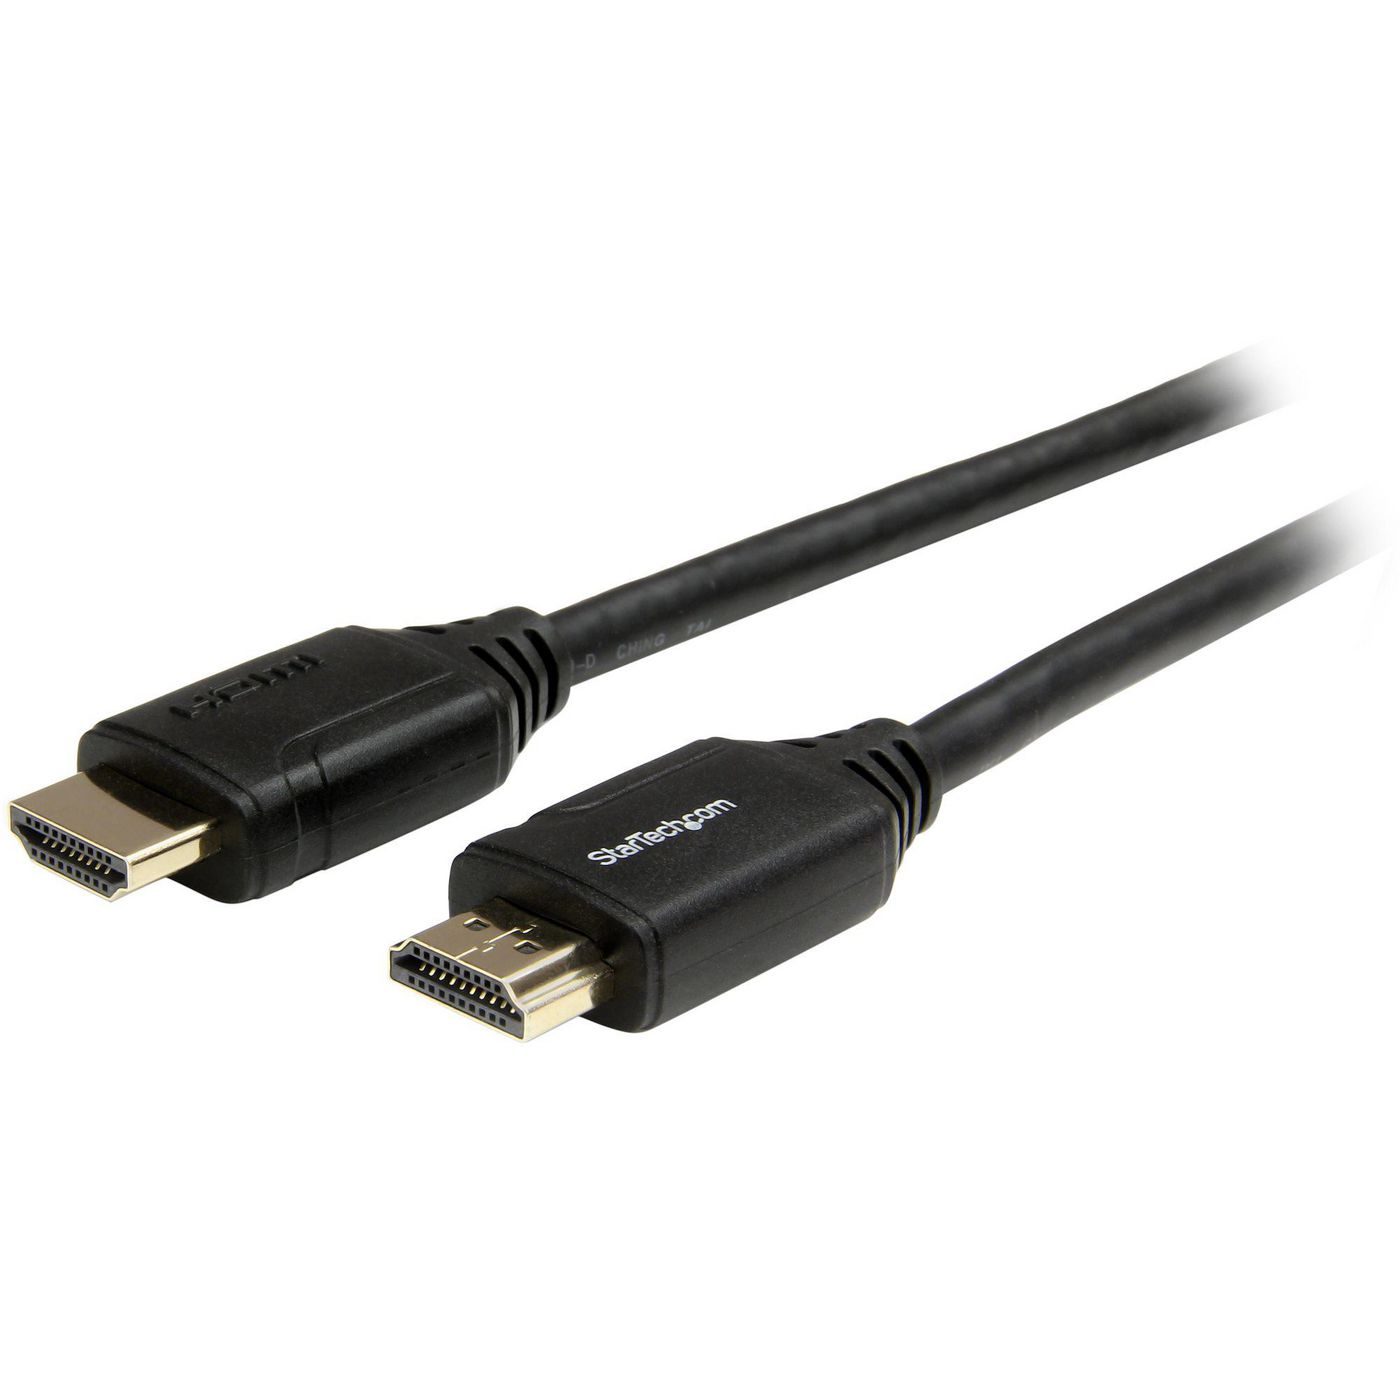 STARTECH.COM Premium High Speed HDMI Kabel mit Ethernet - 4K 60Hz - HDMI 2.0 - 1m